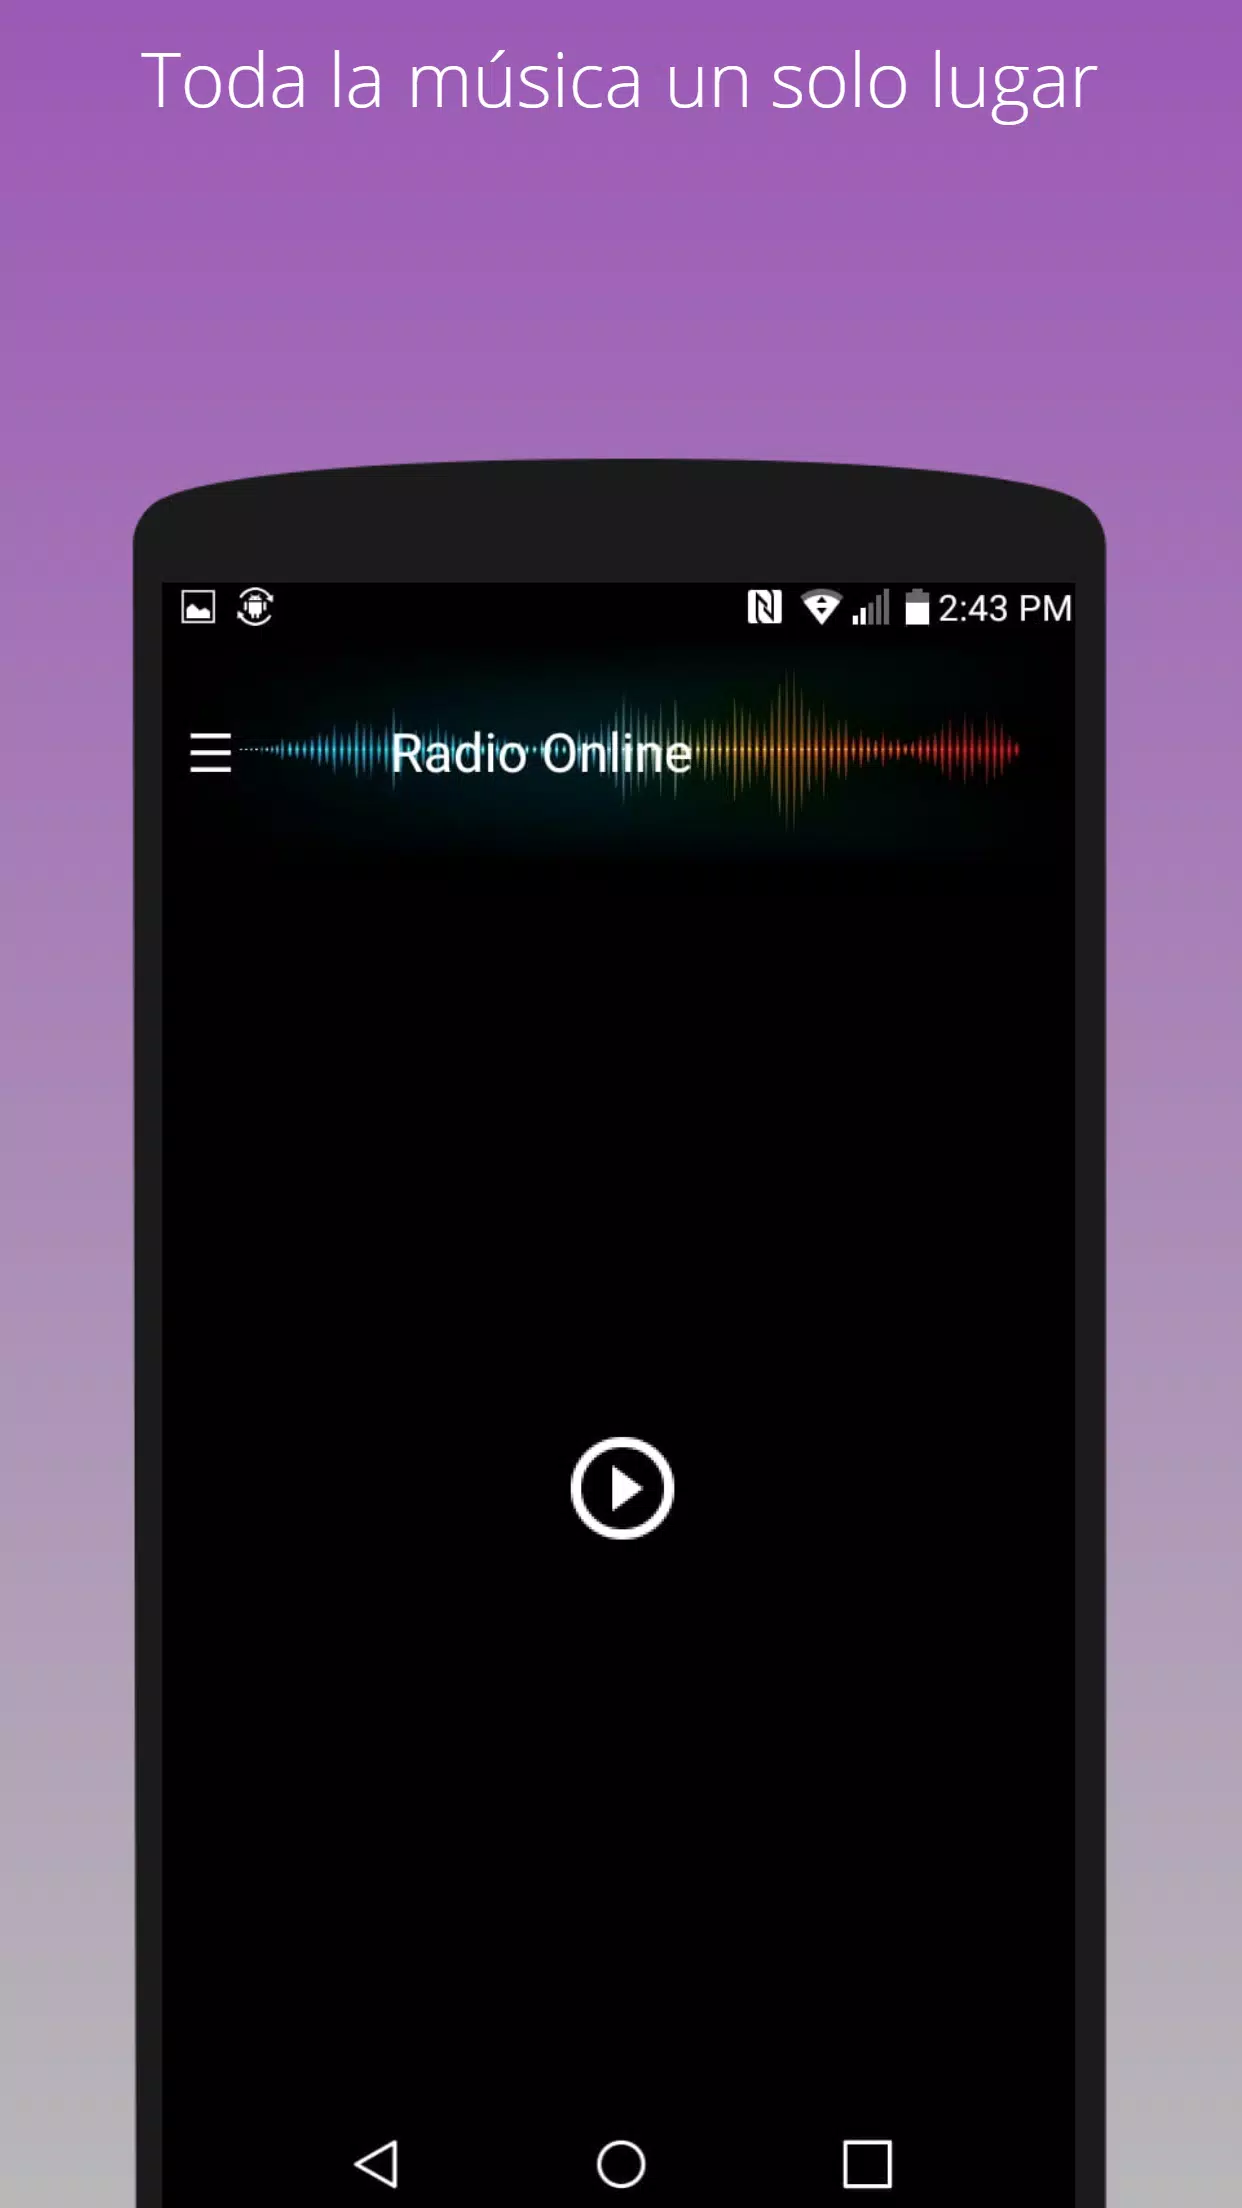 Radio Romántica 104.1 FM en vivo emisora chilena APK per Android Download